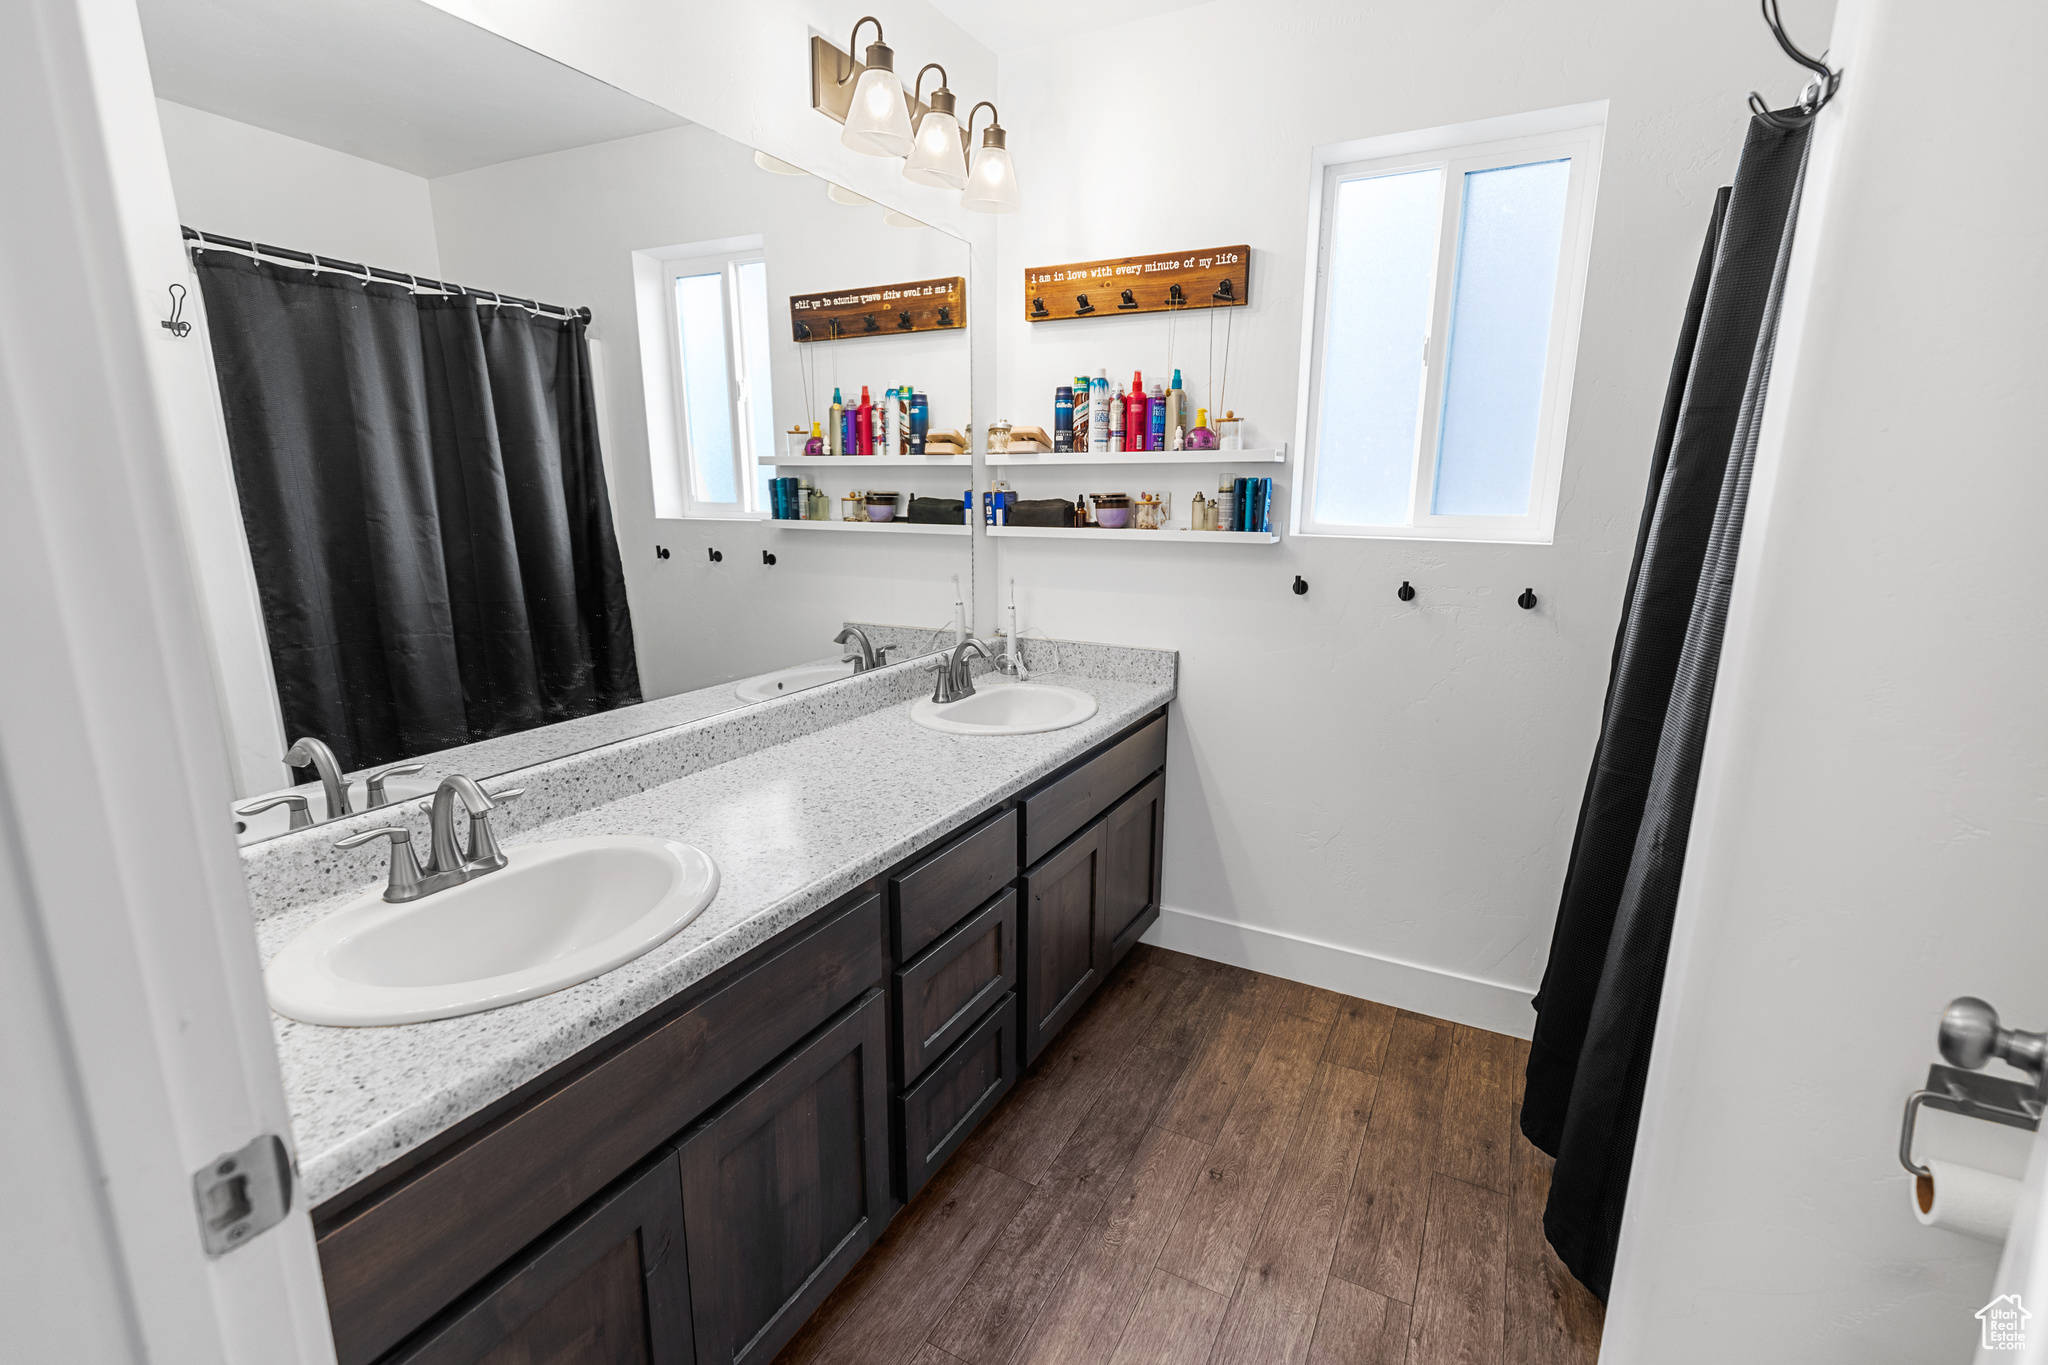 Bathroom with double sink vanity and hardwood / wood-style floors